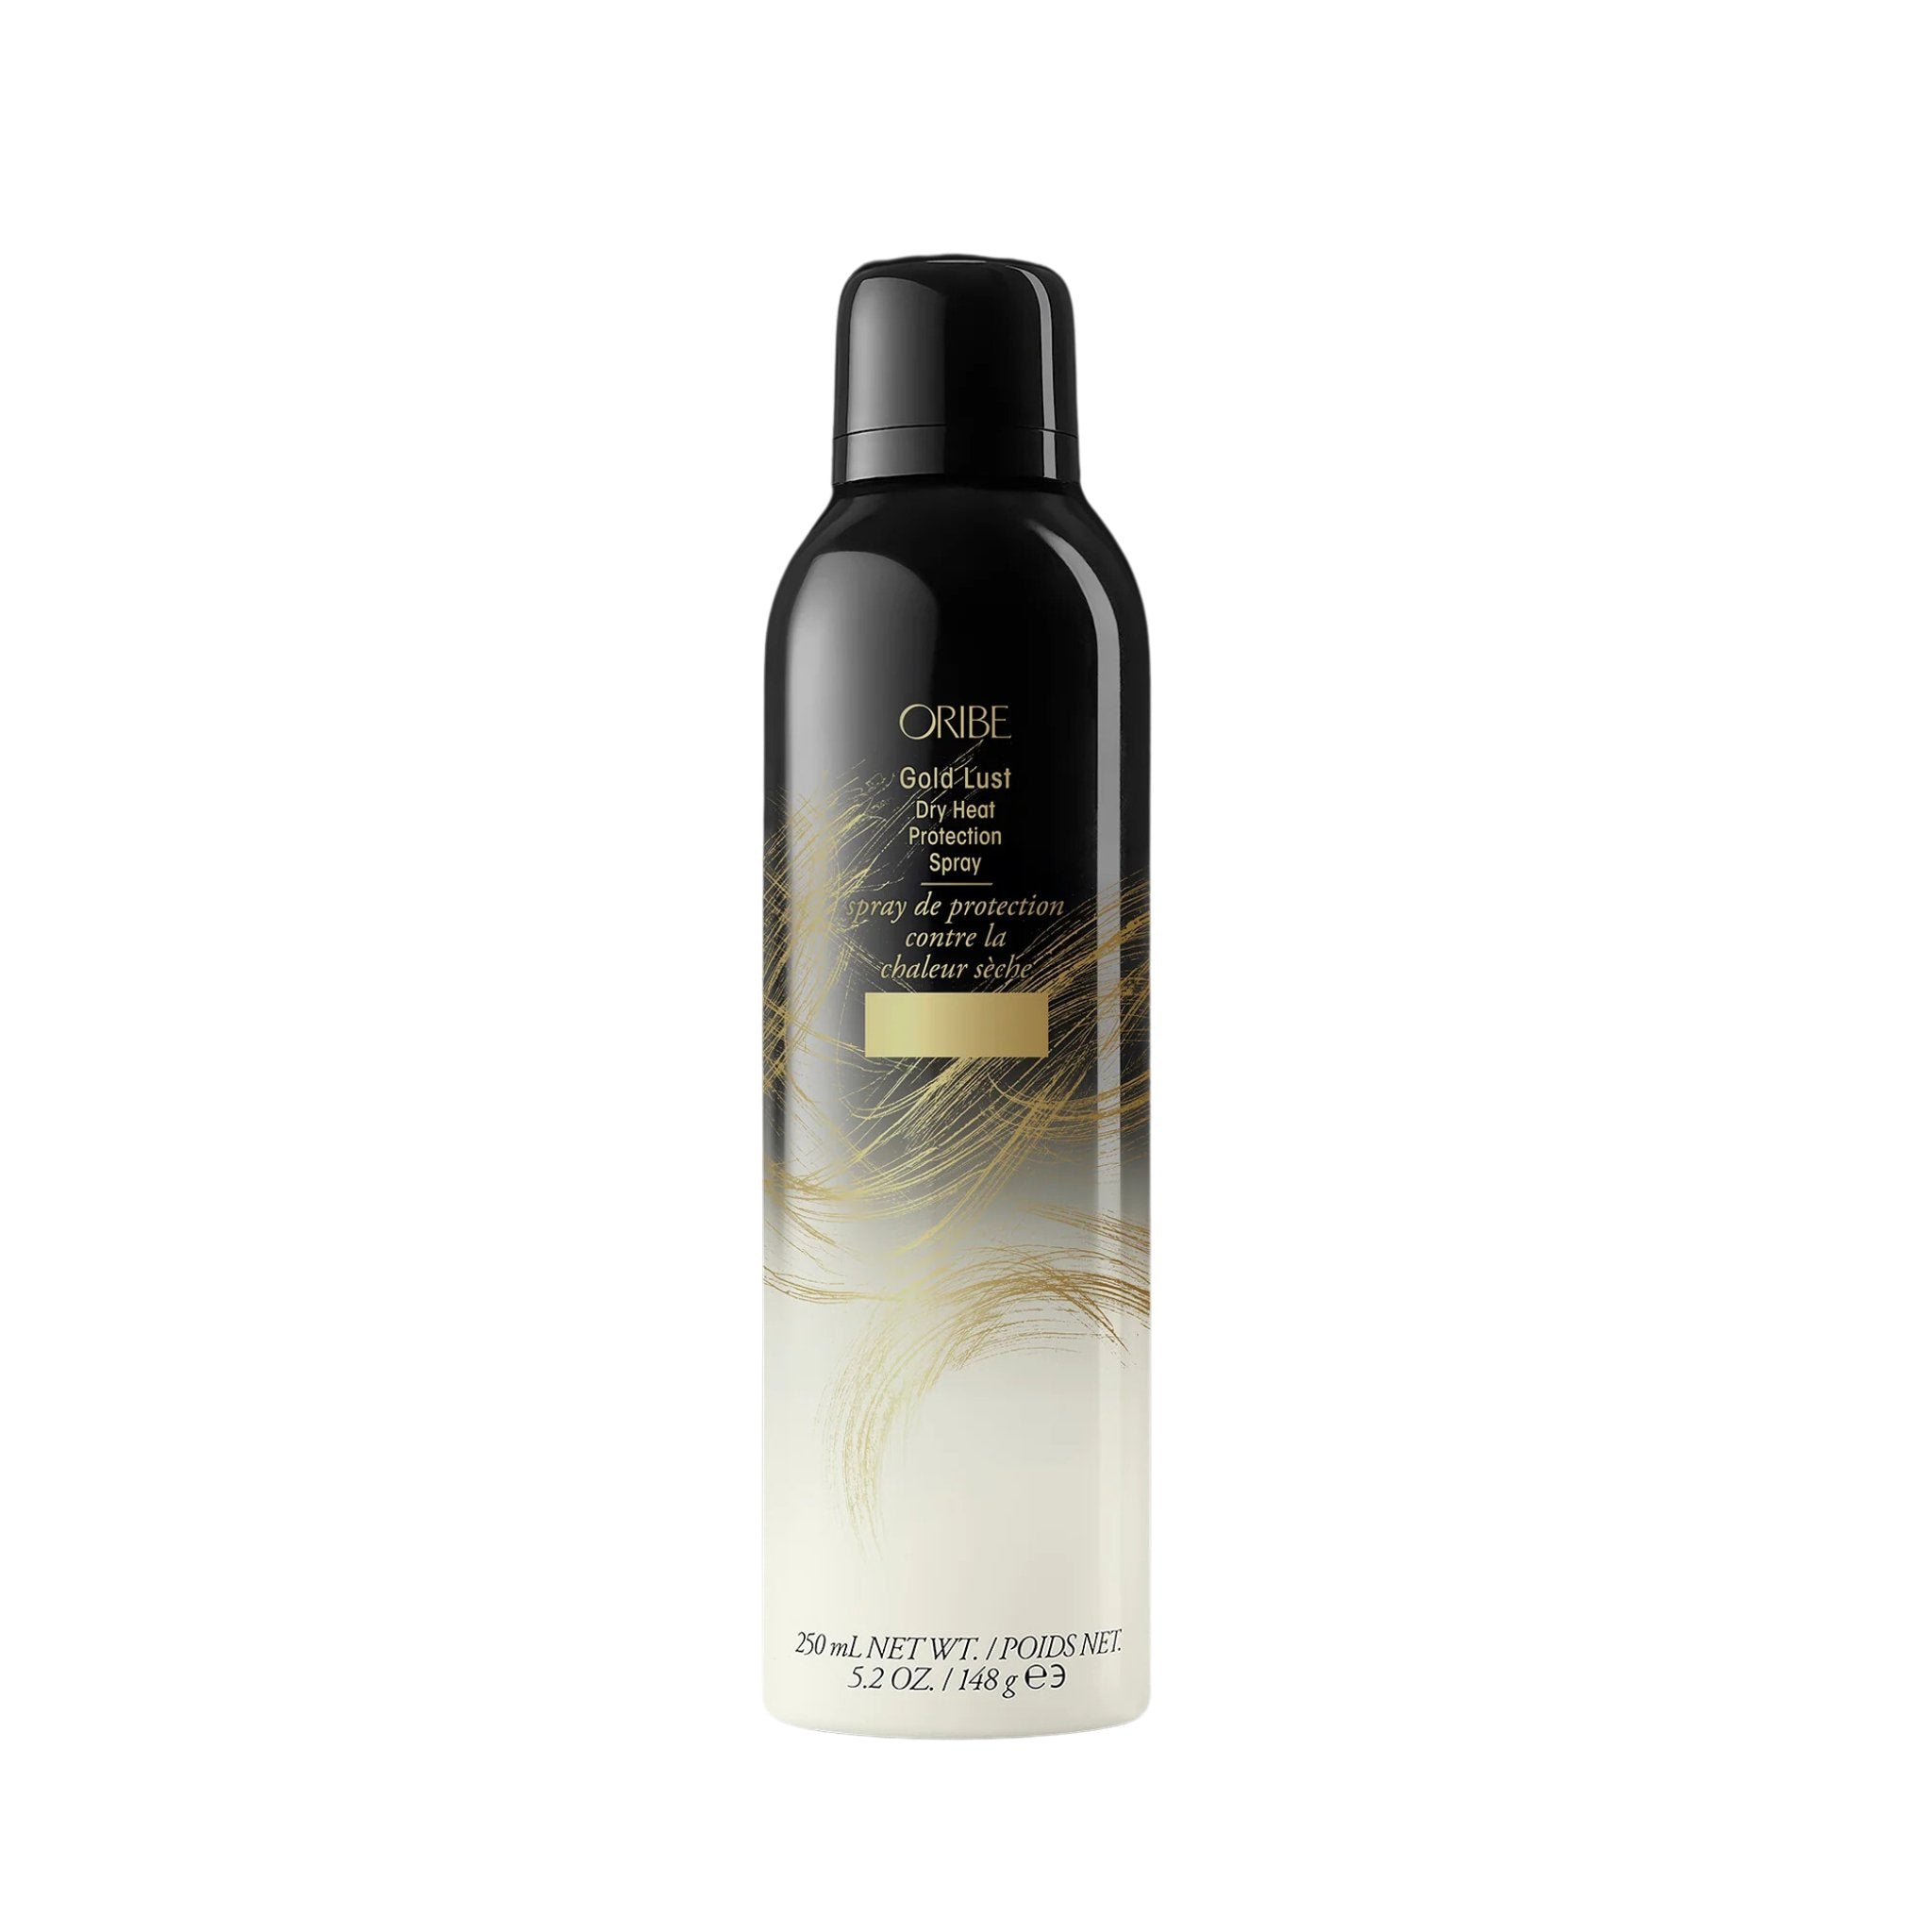 Oribe. Spray de Protection Contre la Chaleur Gold Lust - 250 ml - Concept C. Shop